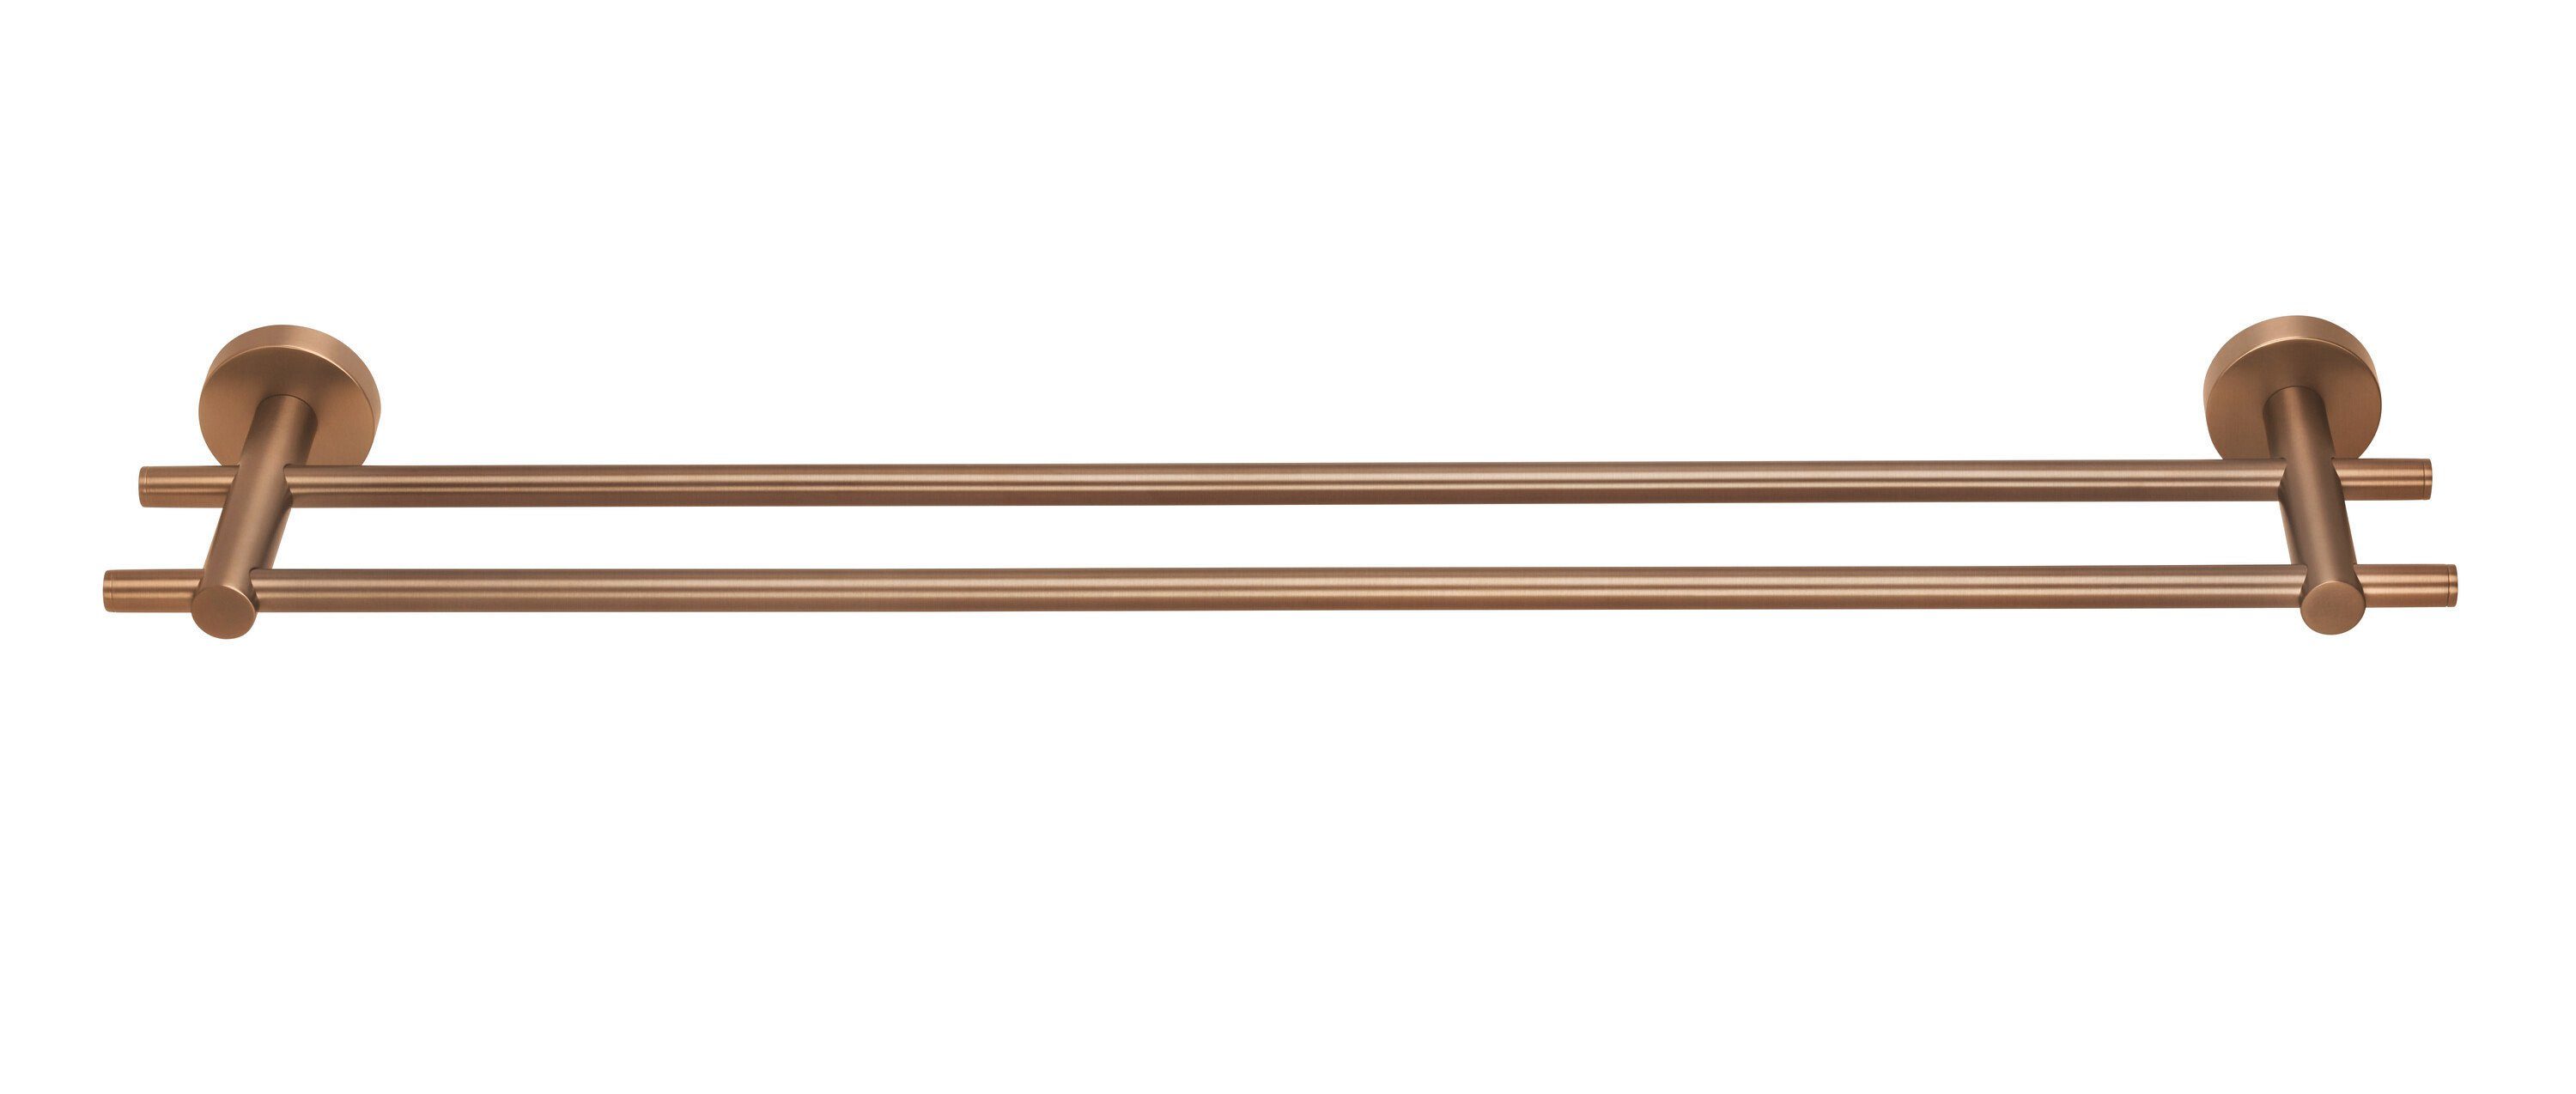 tesa Handtuchhalter Doppel-Handtuchstange MOON - 2-Stangen-Handtuchhalter, selbstklebend, PVD-beschichtetes Metall - ohne Bohren - 112 x 640 x 50 mm - Bronze